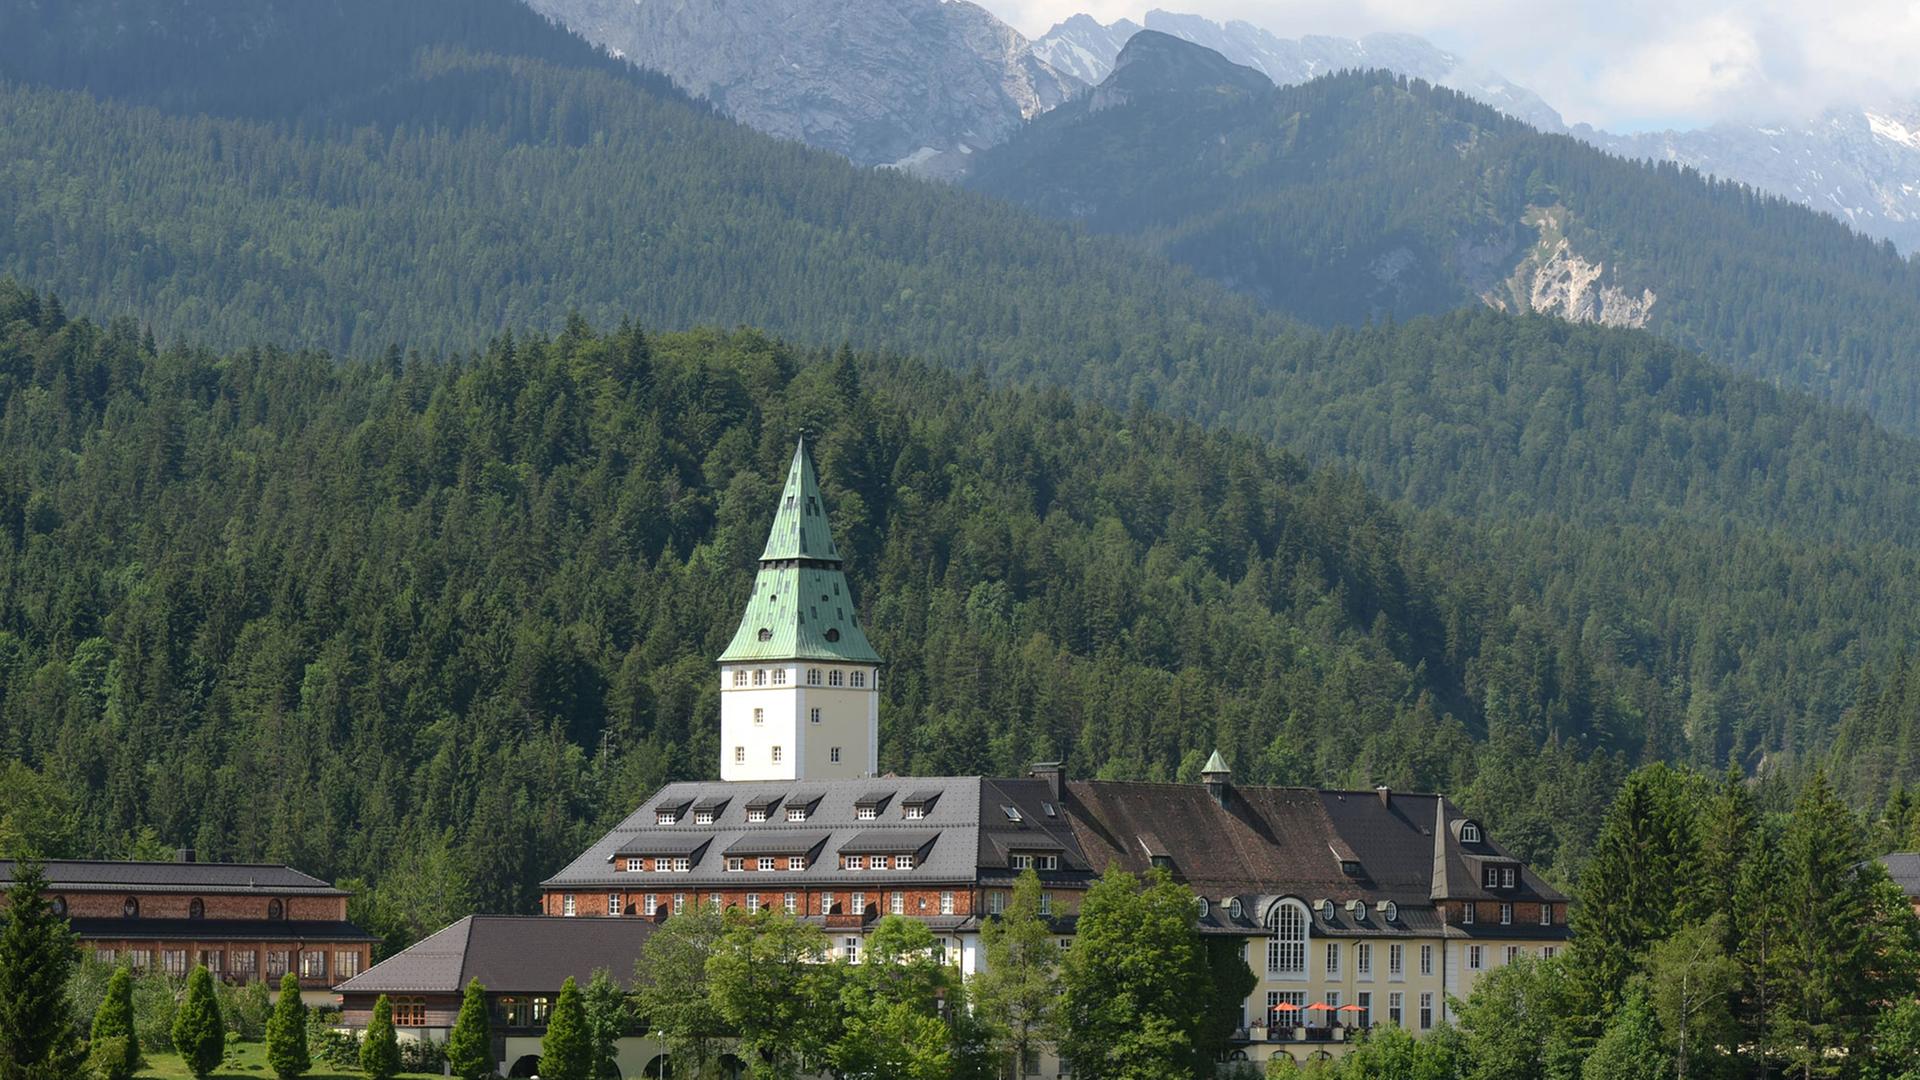 Das Schloss Elmau in der Nähe von Garmisch-Partenkirchen ist Ort des G7-Treffens im Juni 2015.